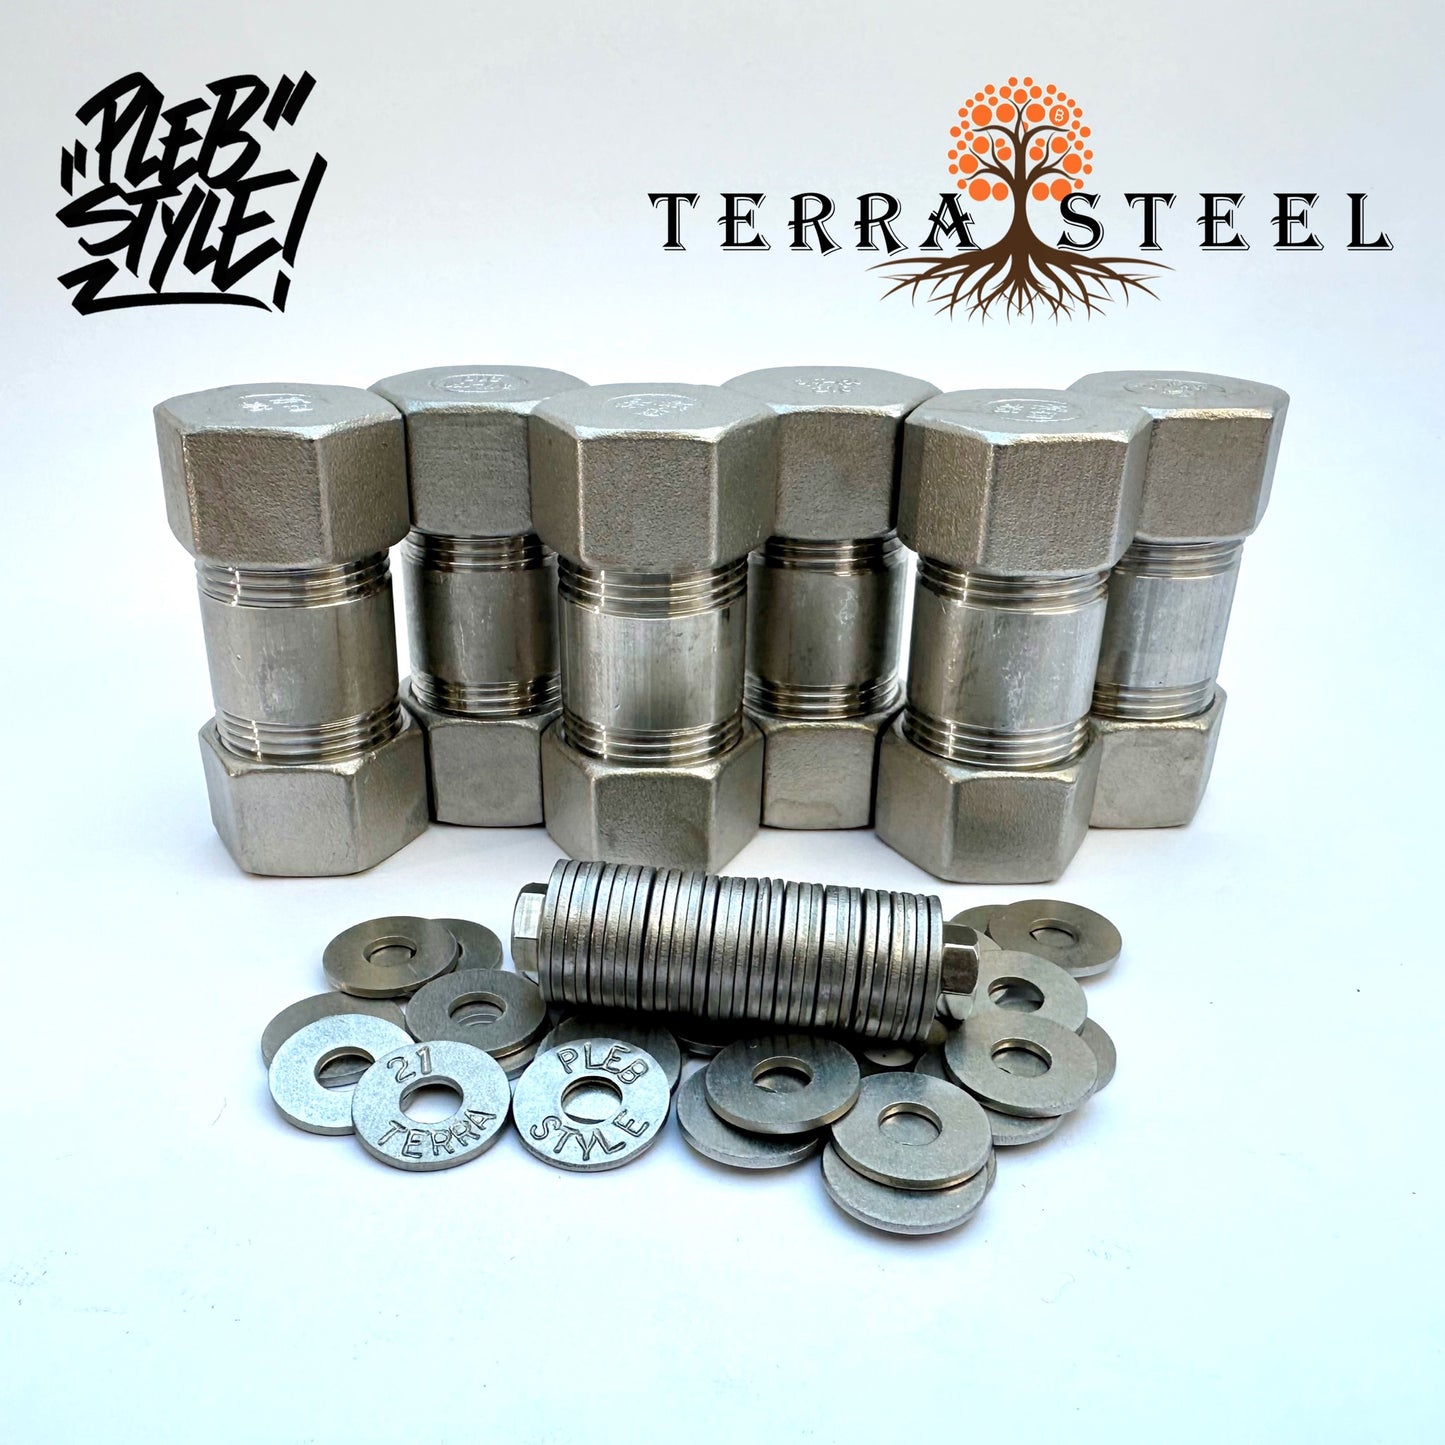 6x Terra Steel Wallet by Plebstyle